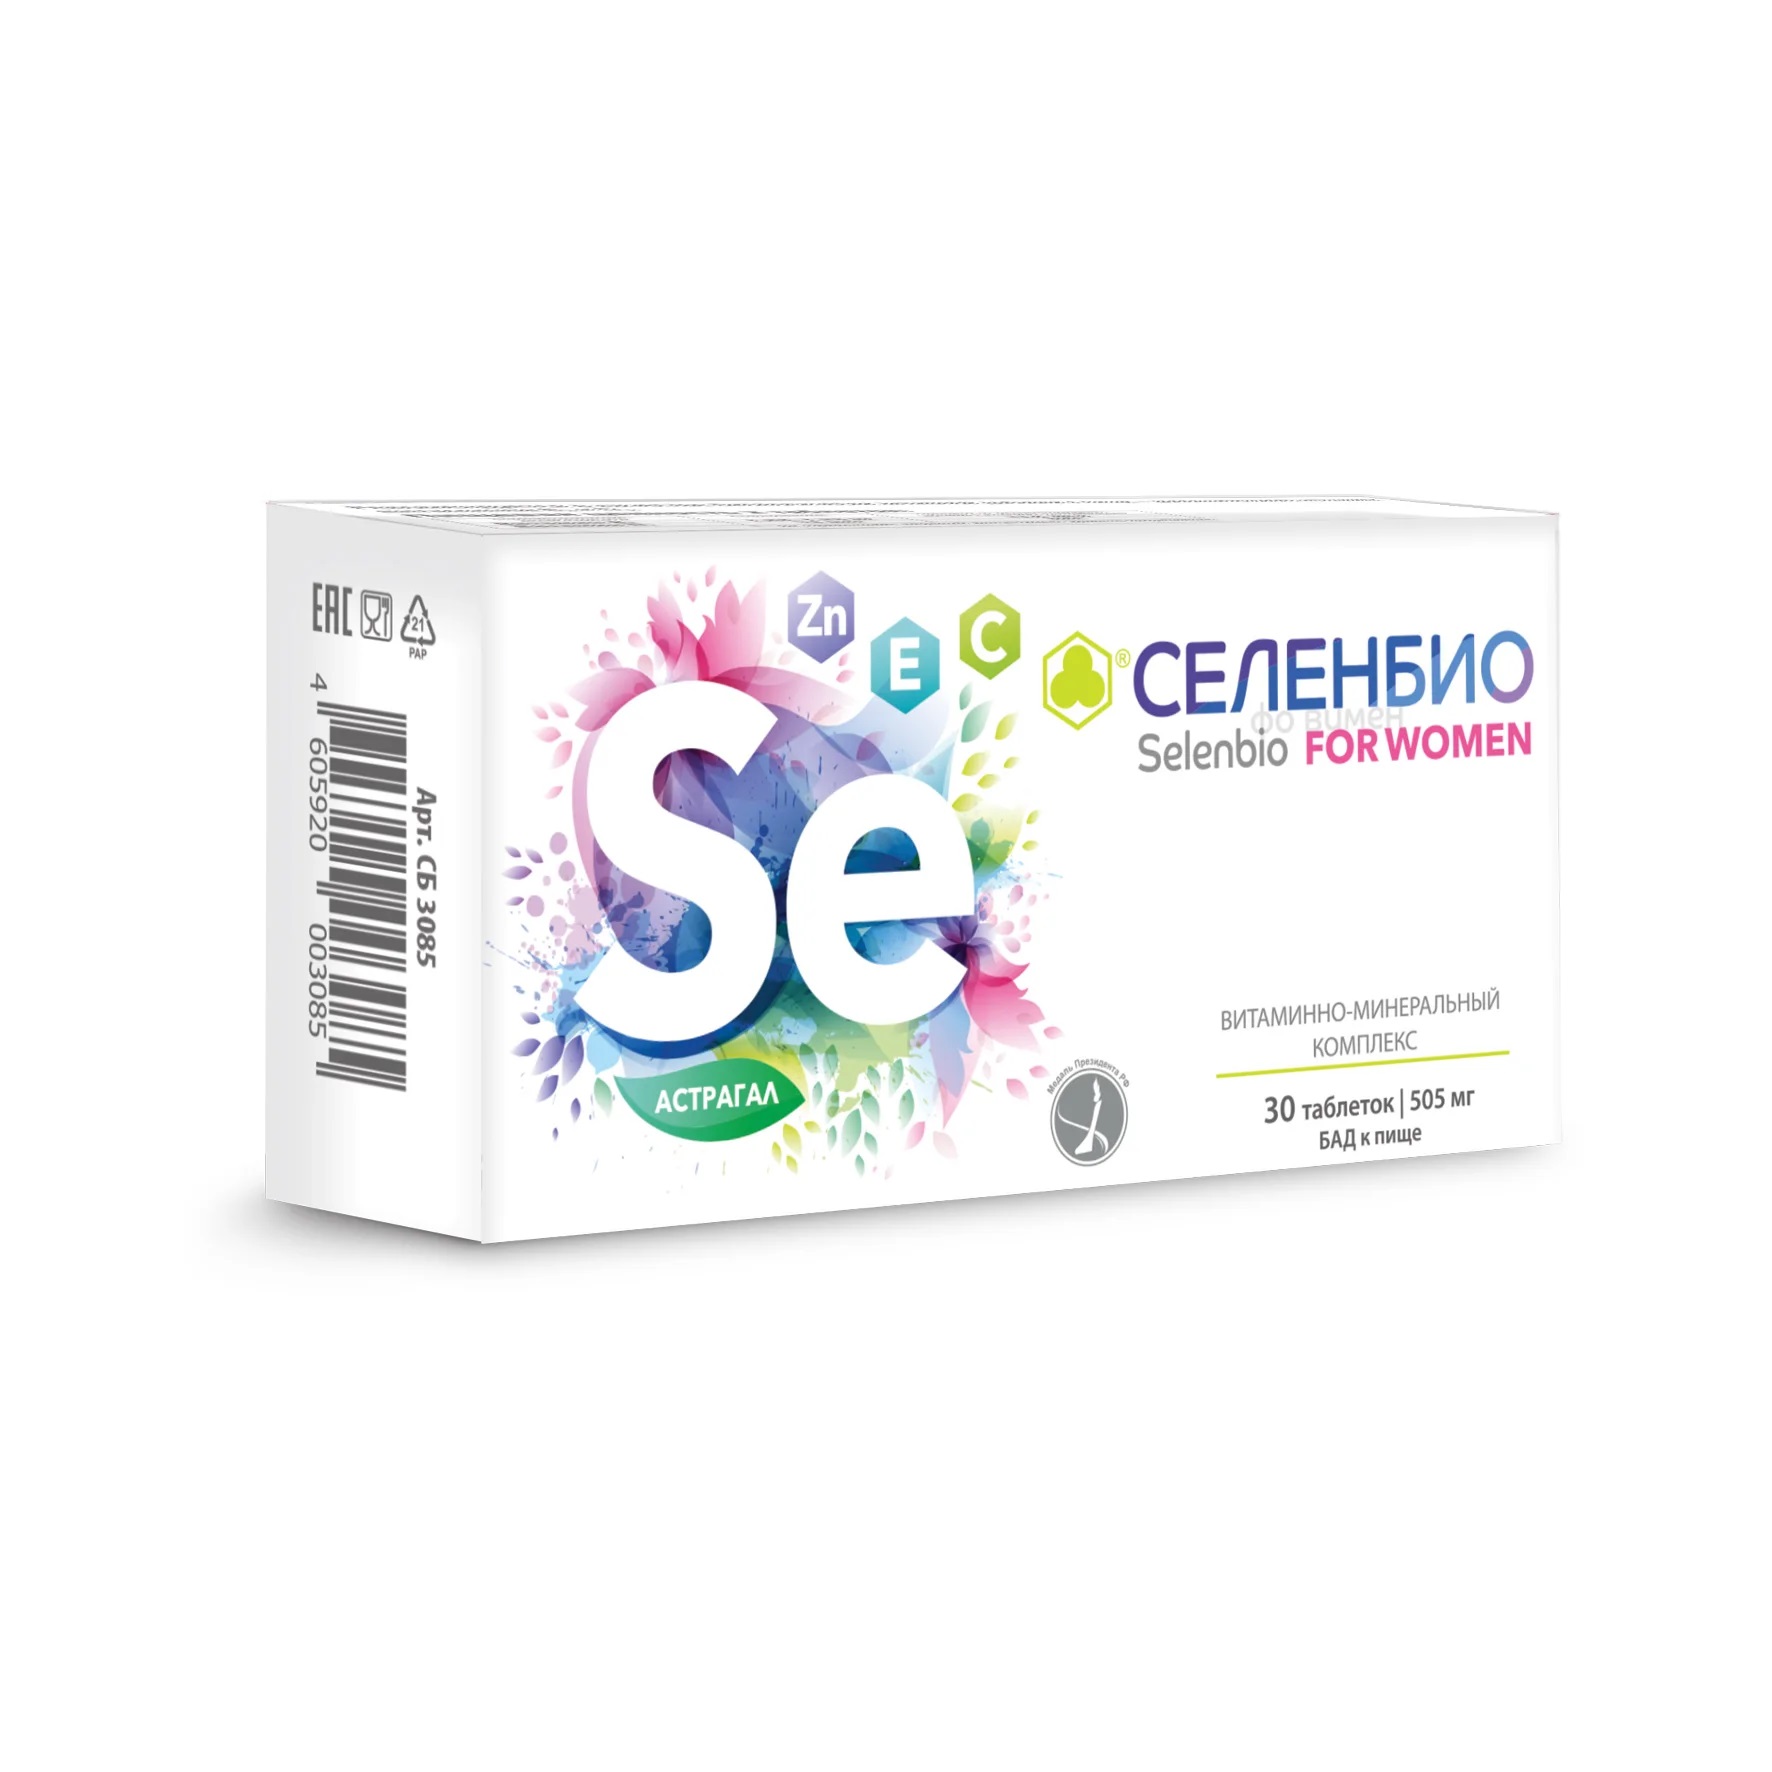 Селенбио for women, таблетки 505 мг, 30 шт. маленькие женщины little women